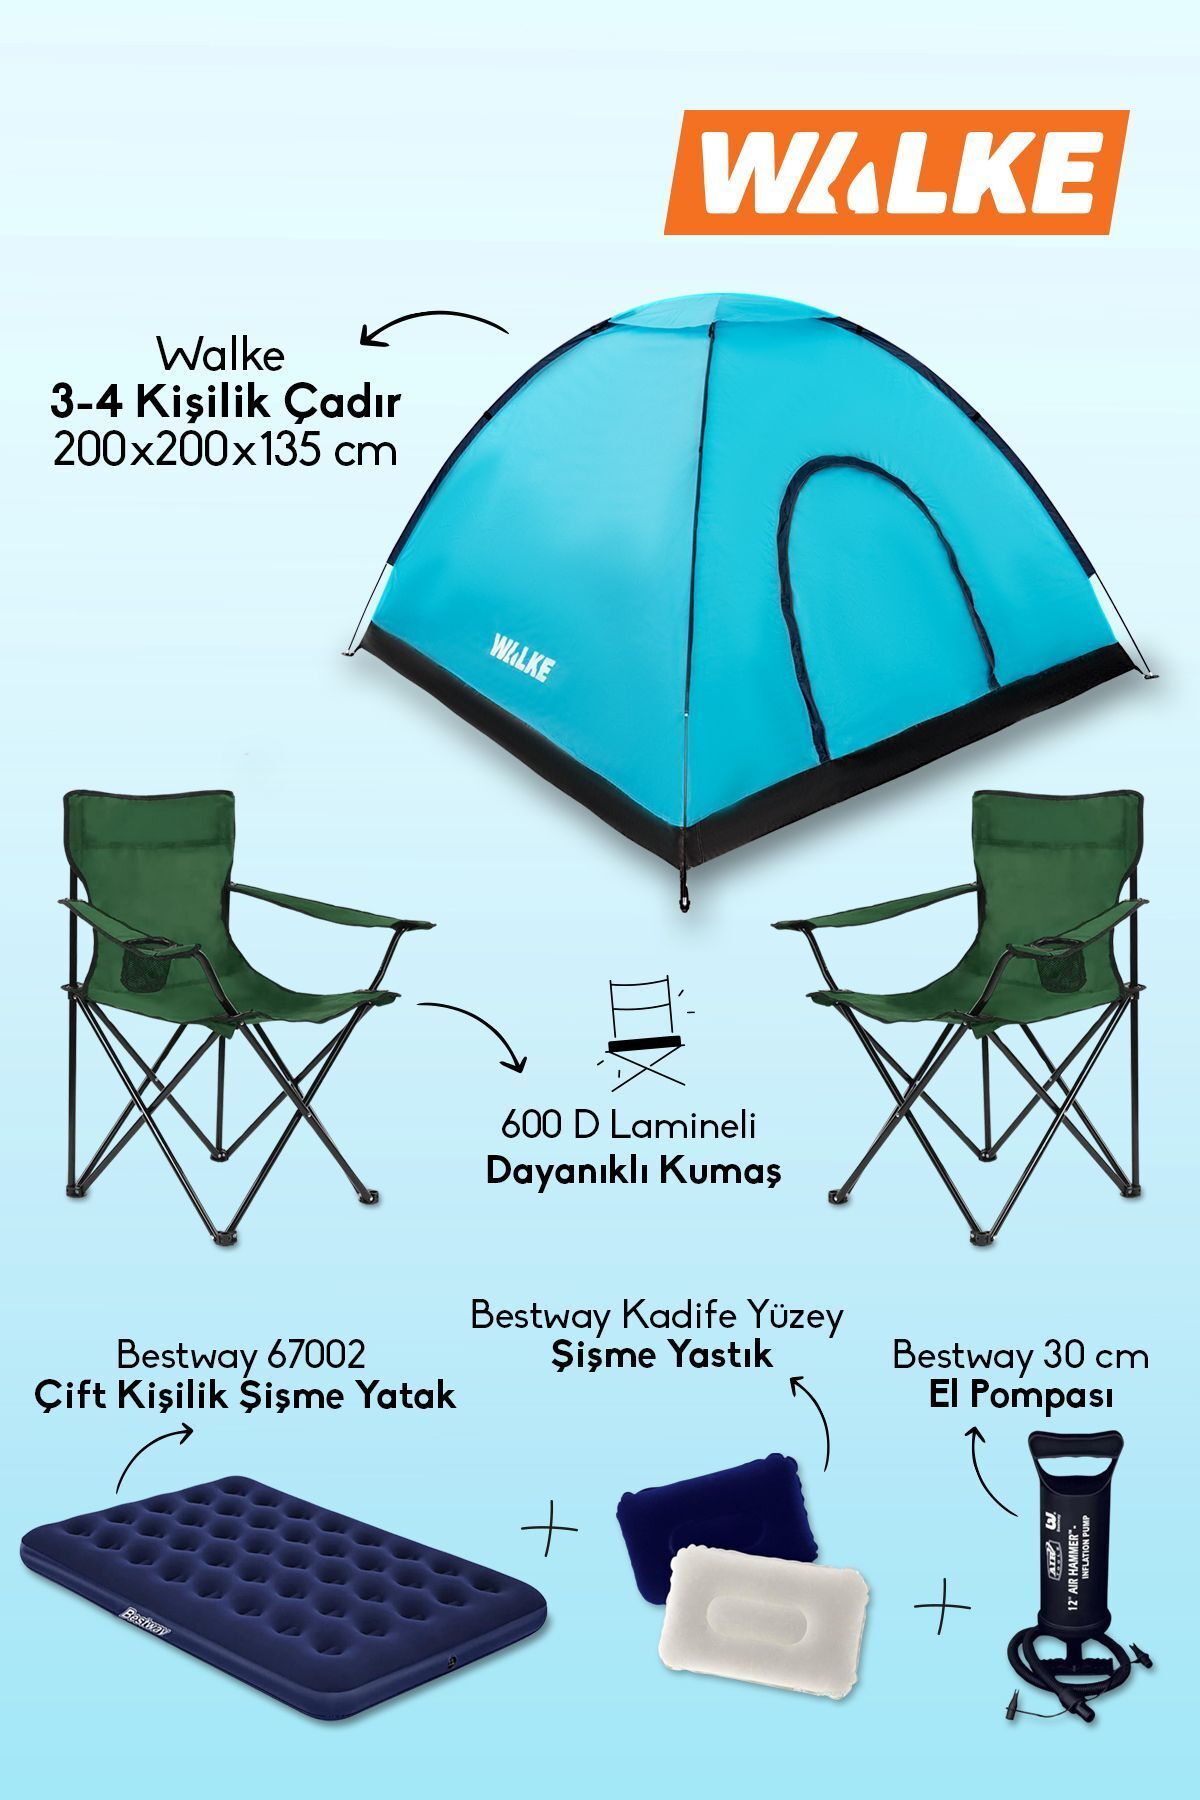 Walke Lüks Kamp Seti 4 Kişilik Çadır Çift Kişilik Yatak 2 Adet Yeşil Sandalye 2 Yastık Pompa